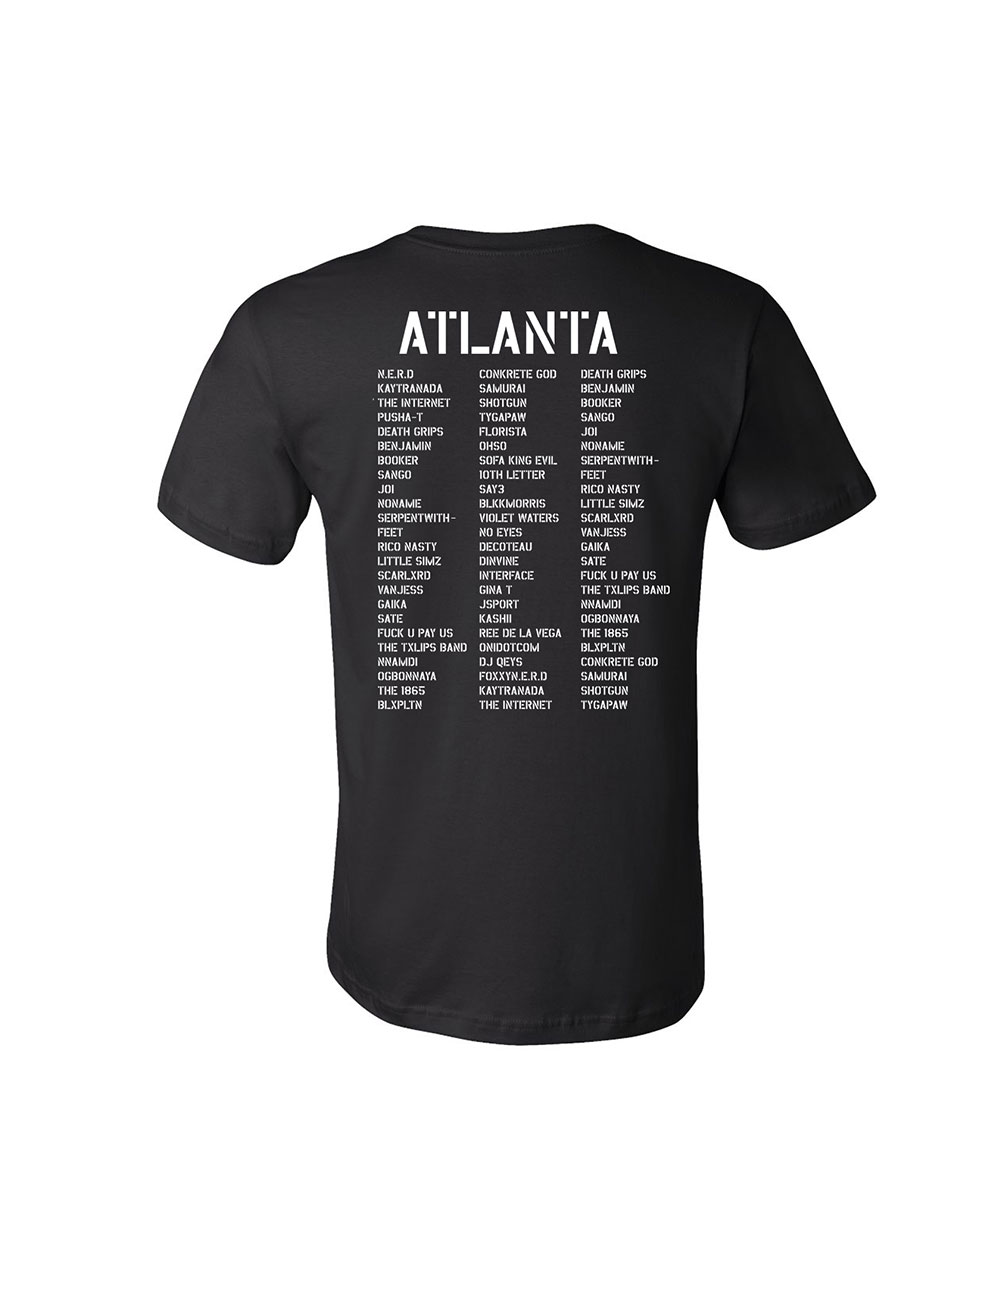 AFROPUNK - Merch - Atlanta Lineup T-Shirt